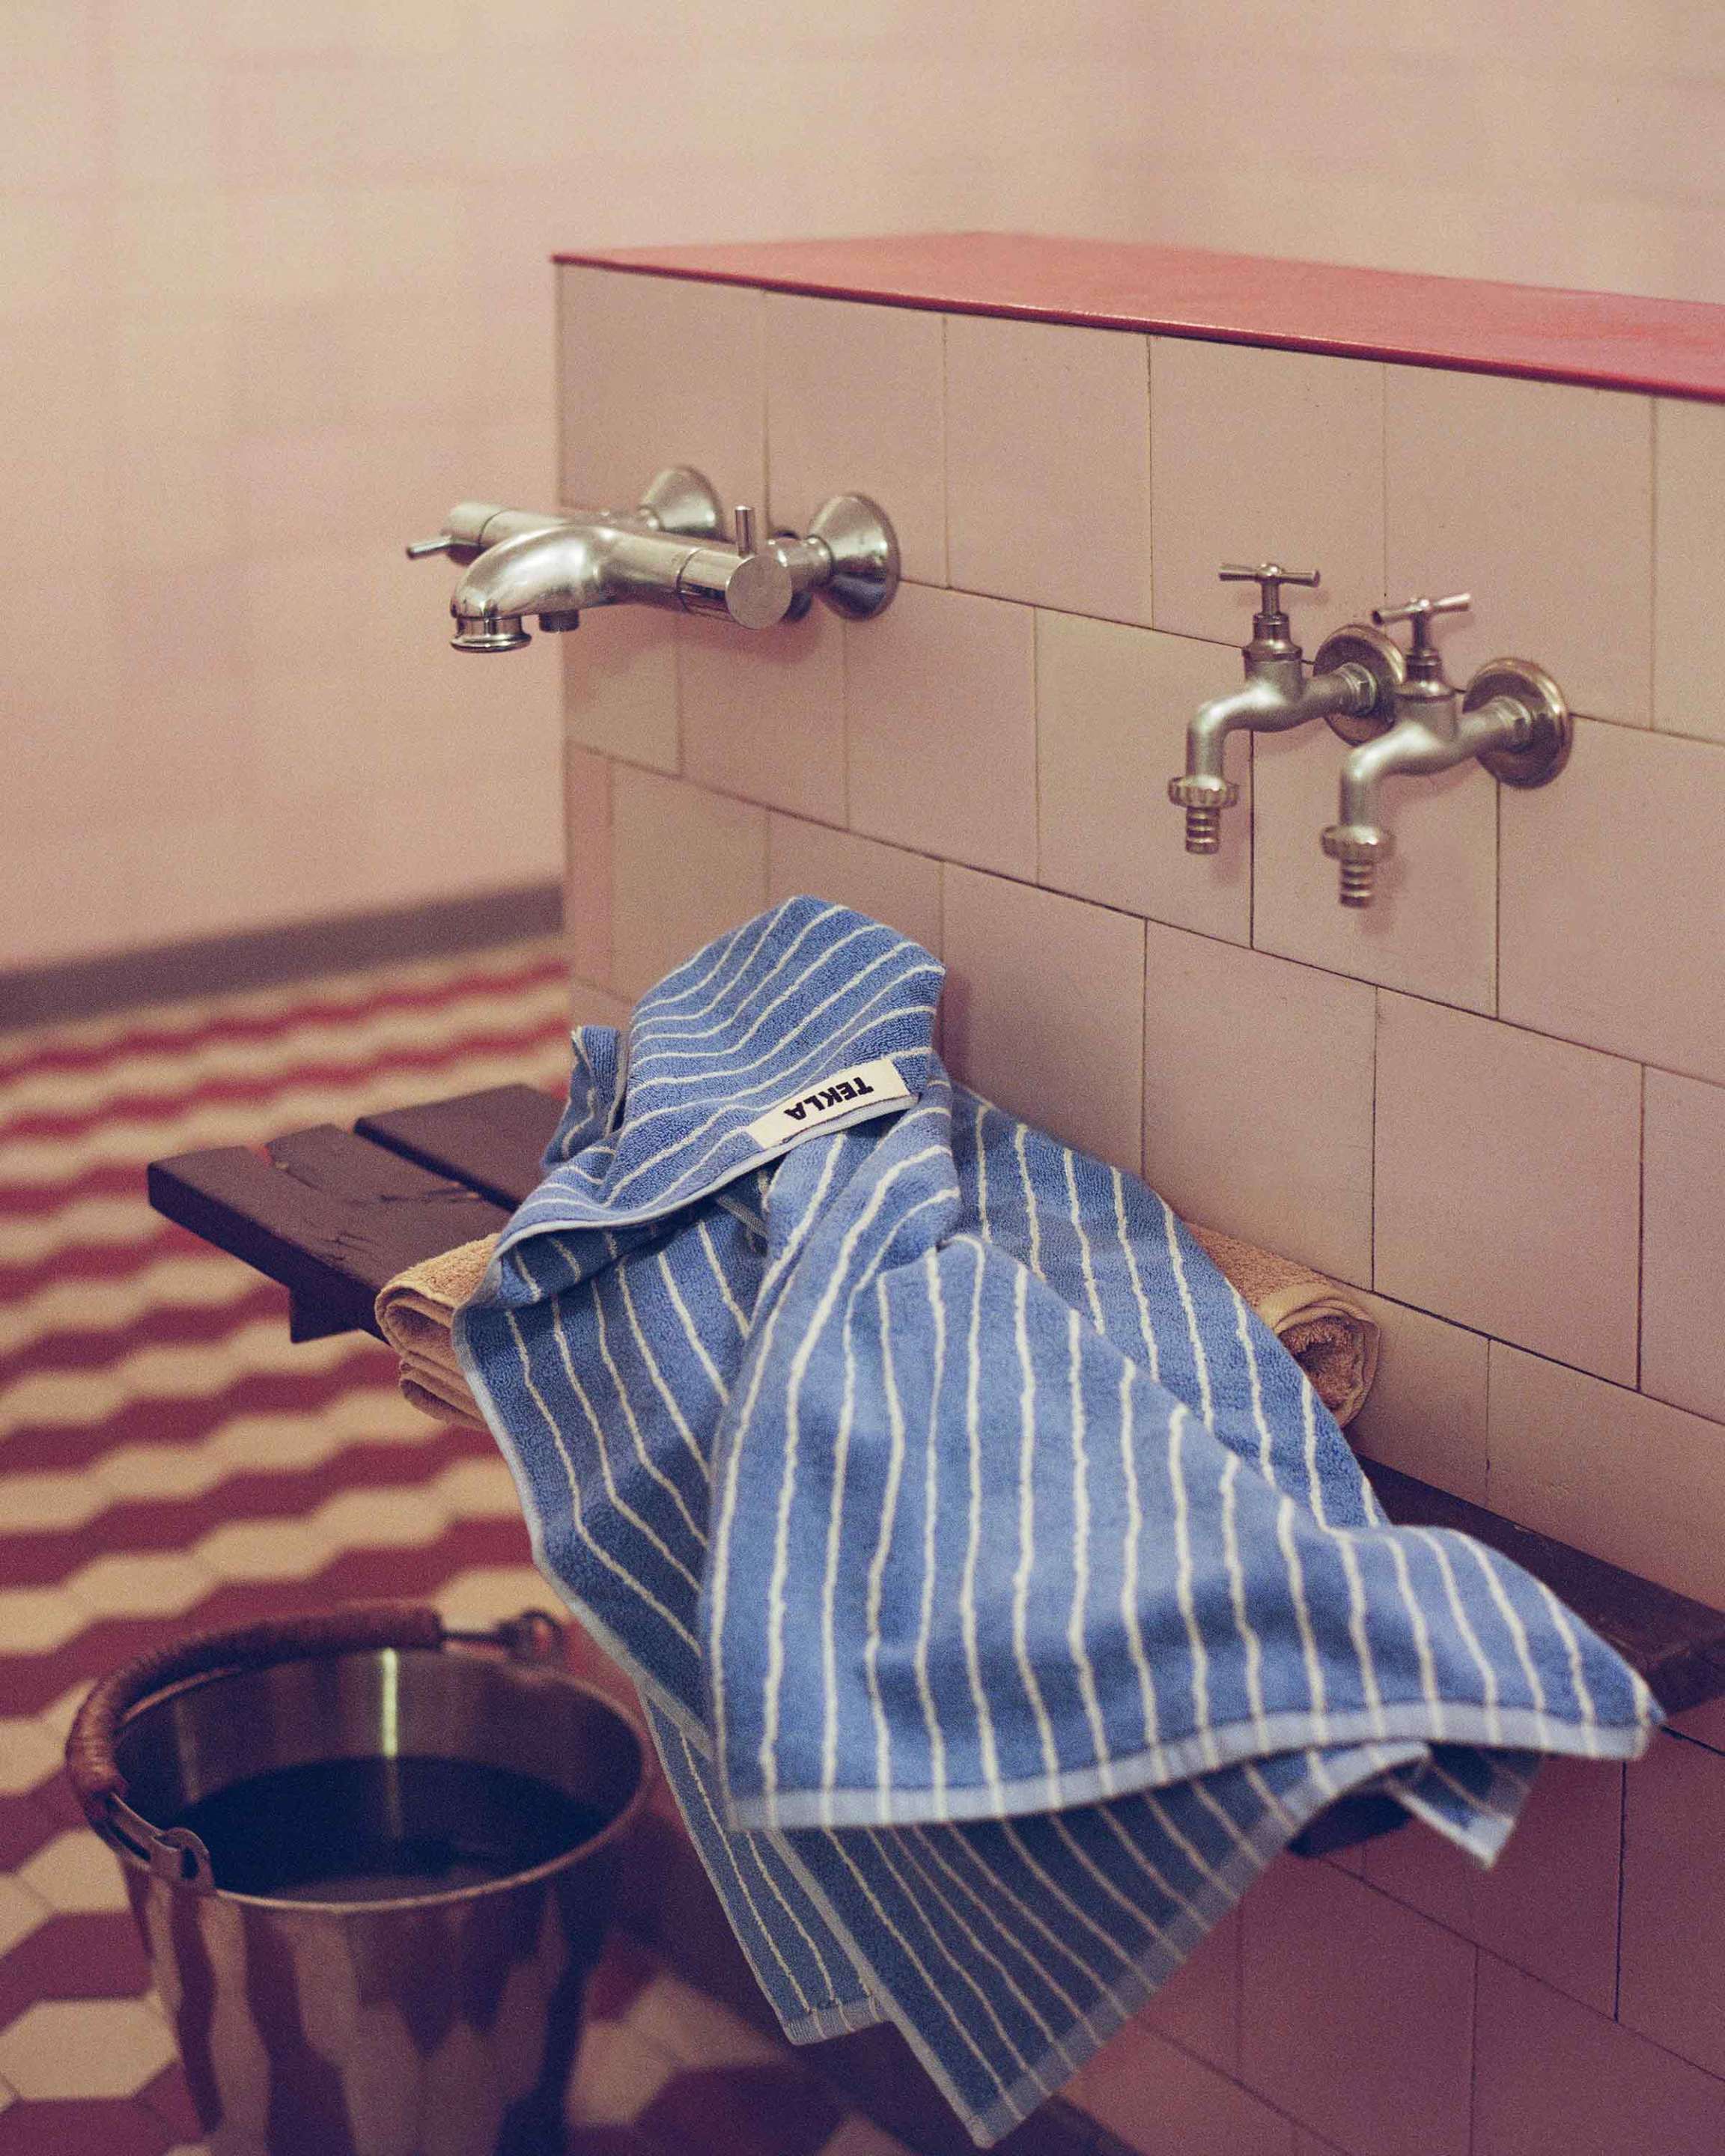 Clear Blue Stripes towel in the Finnish sauna culture